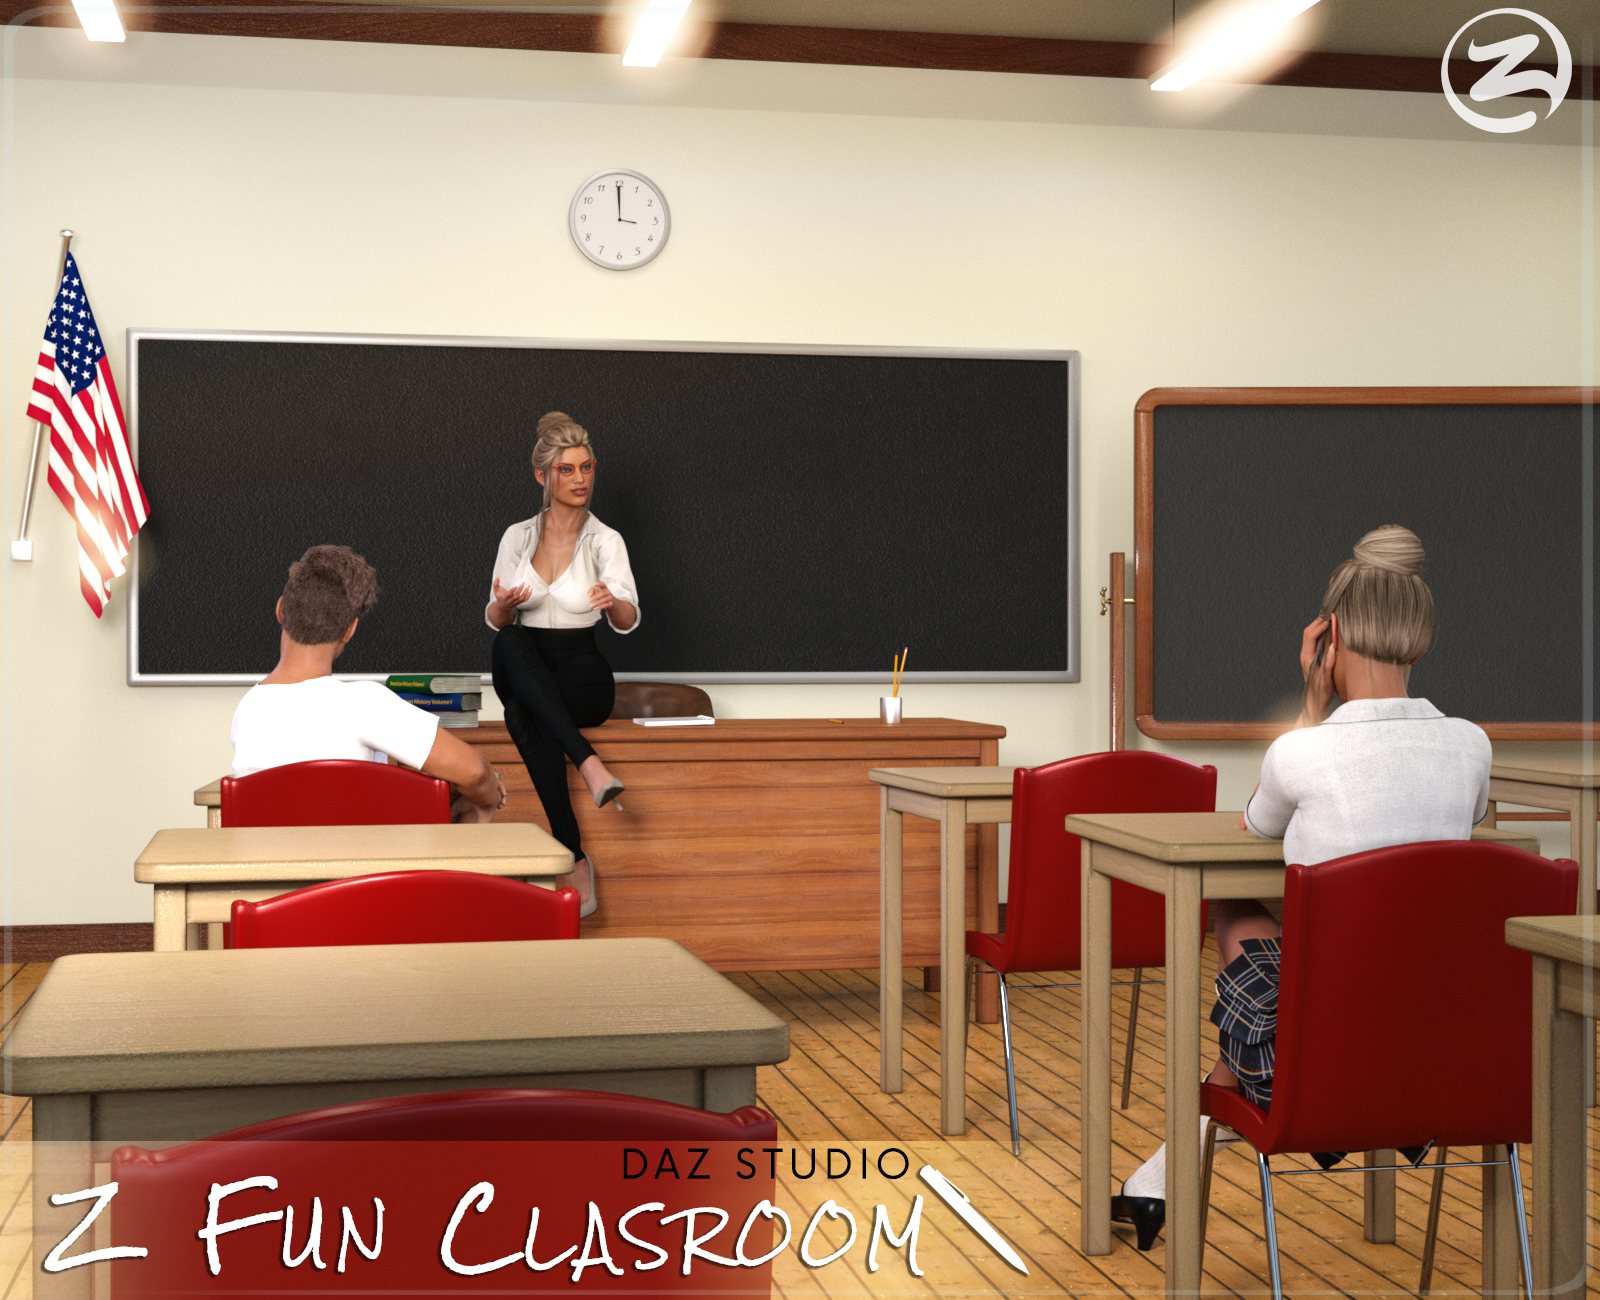 Z Fun Classroom – Daz Studio_DAZ3DDL